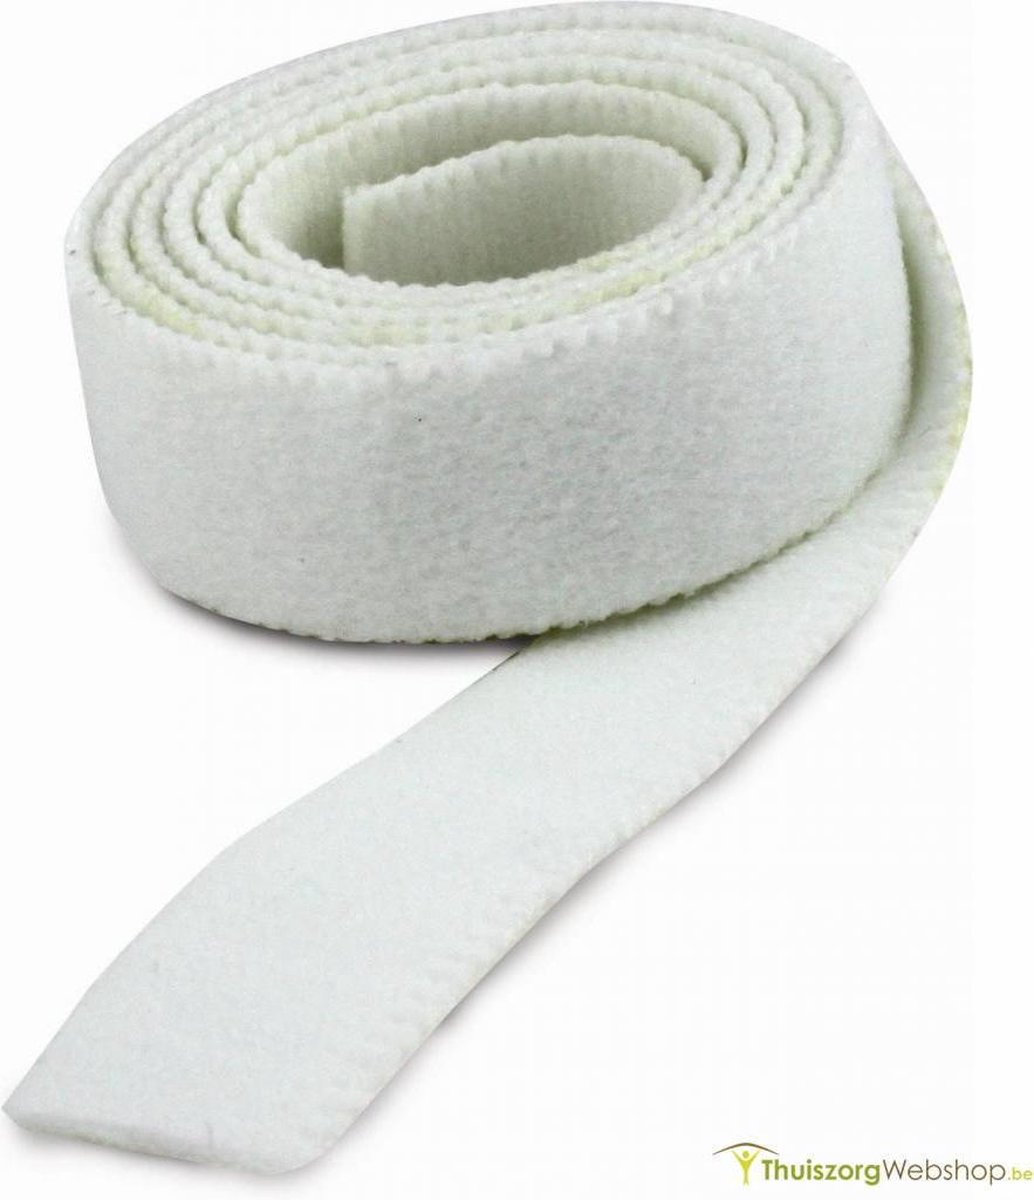 Velcro elastische lusband: 2,5 cm breed, zwart- rol van 5 m